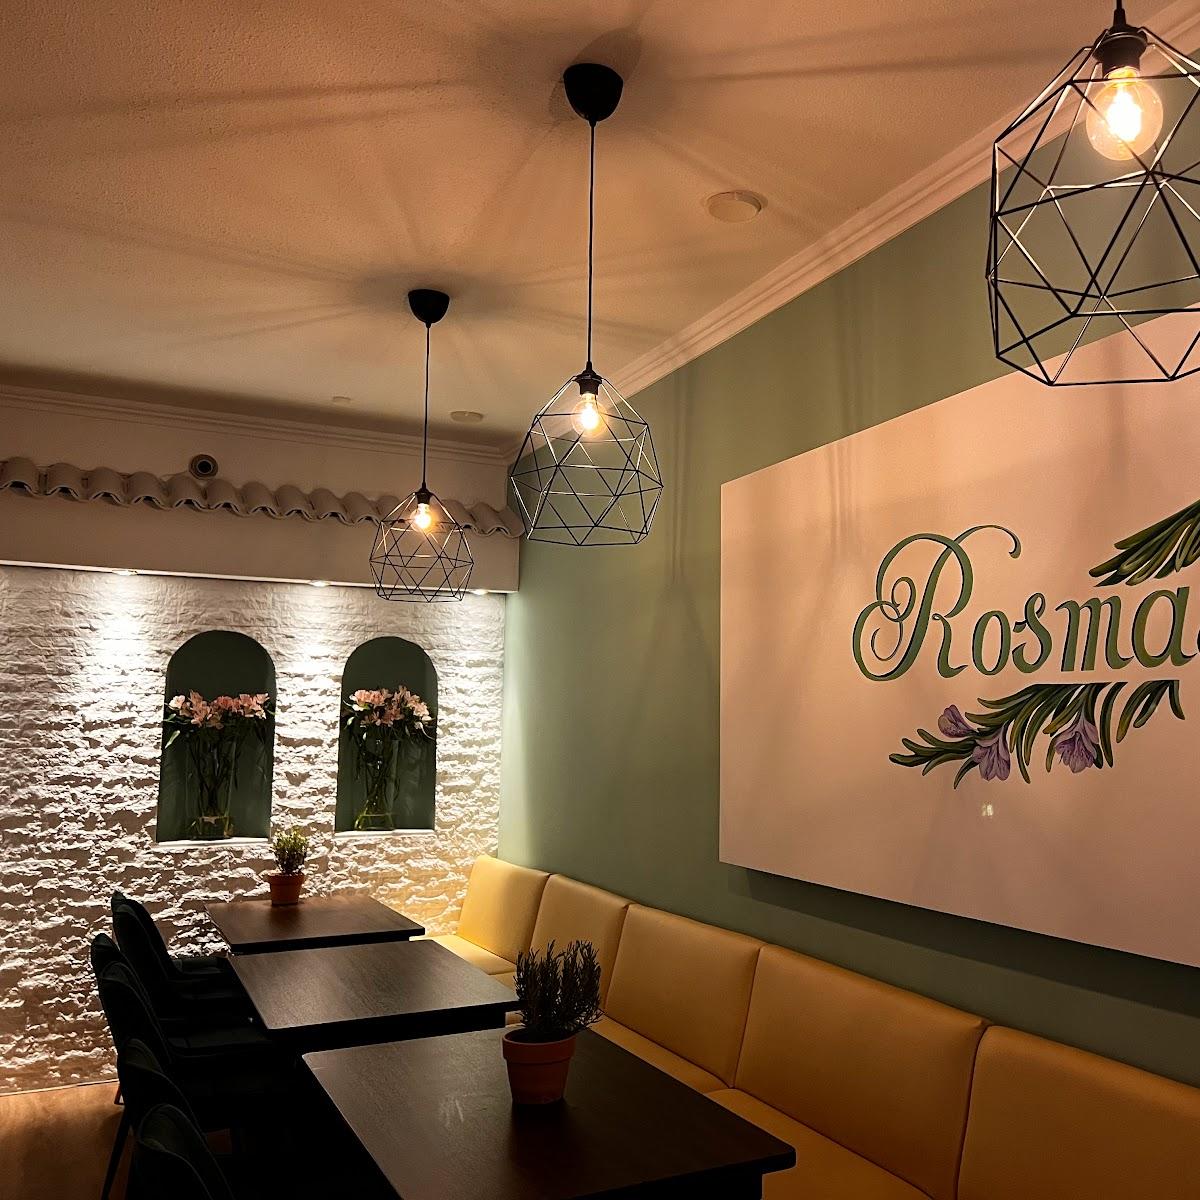 Restaurant "Restaurant Rosmarin" in Schwerte